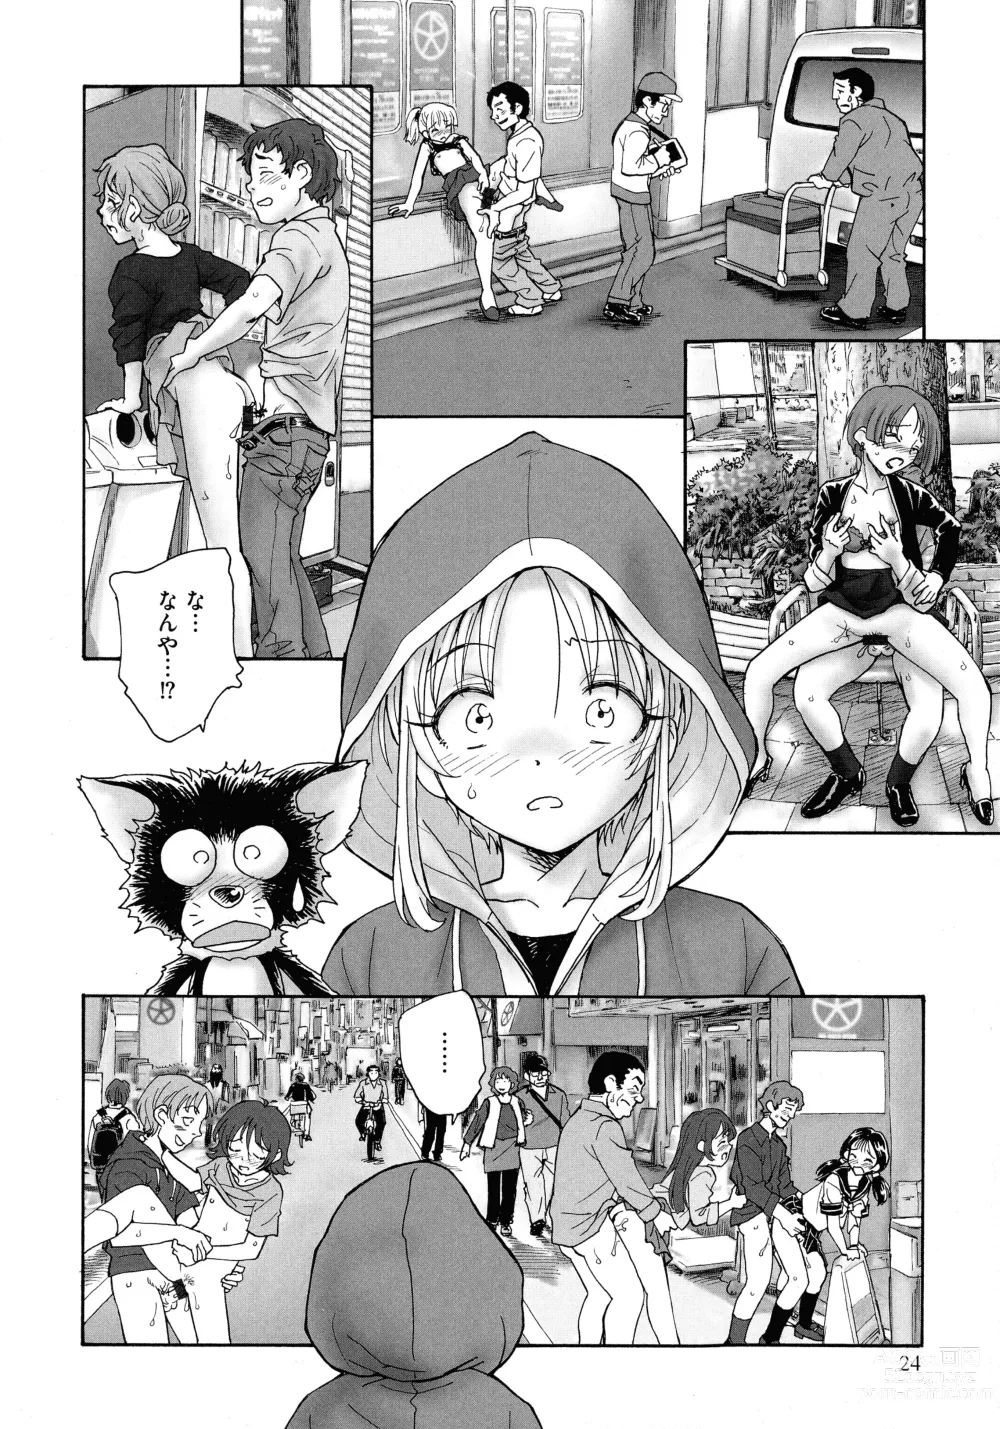 Page 22 of manga Mayoi no Machi no Akazukin Jo